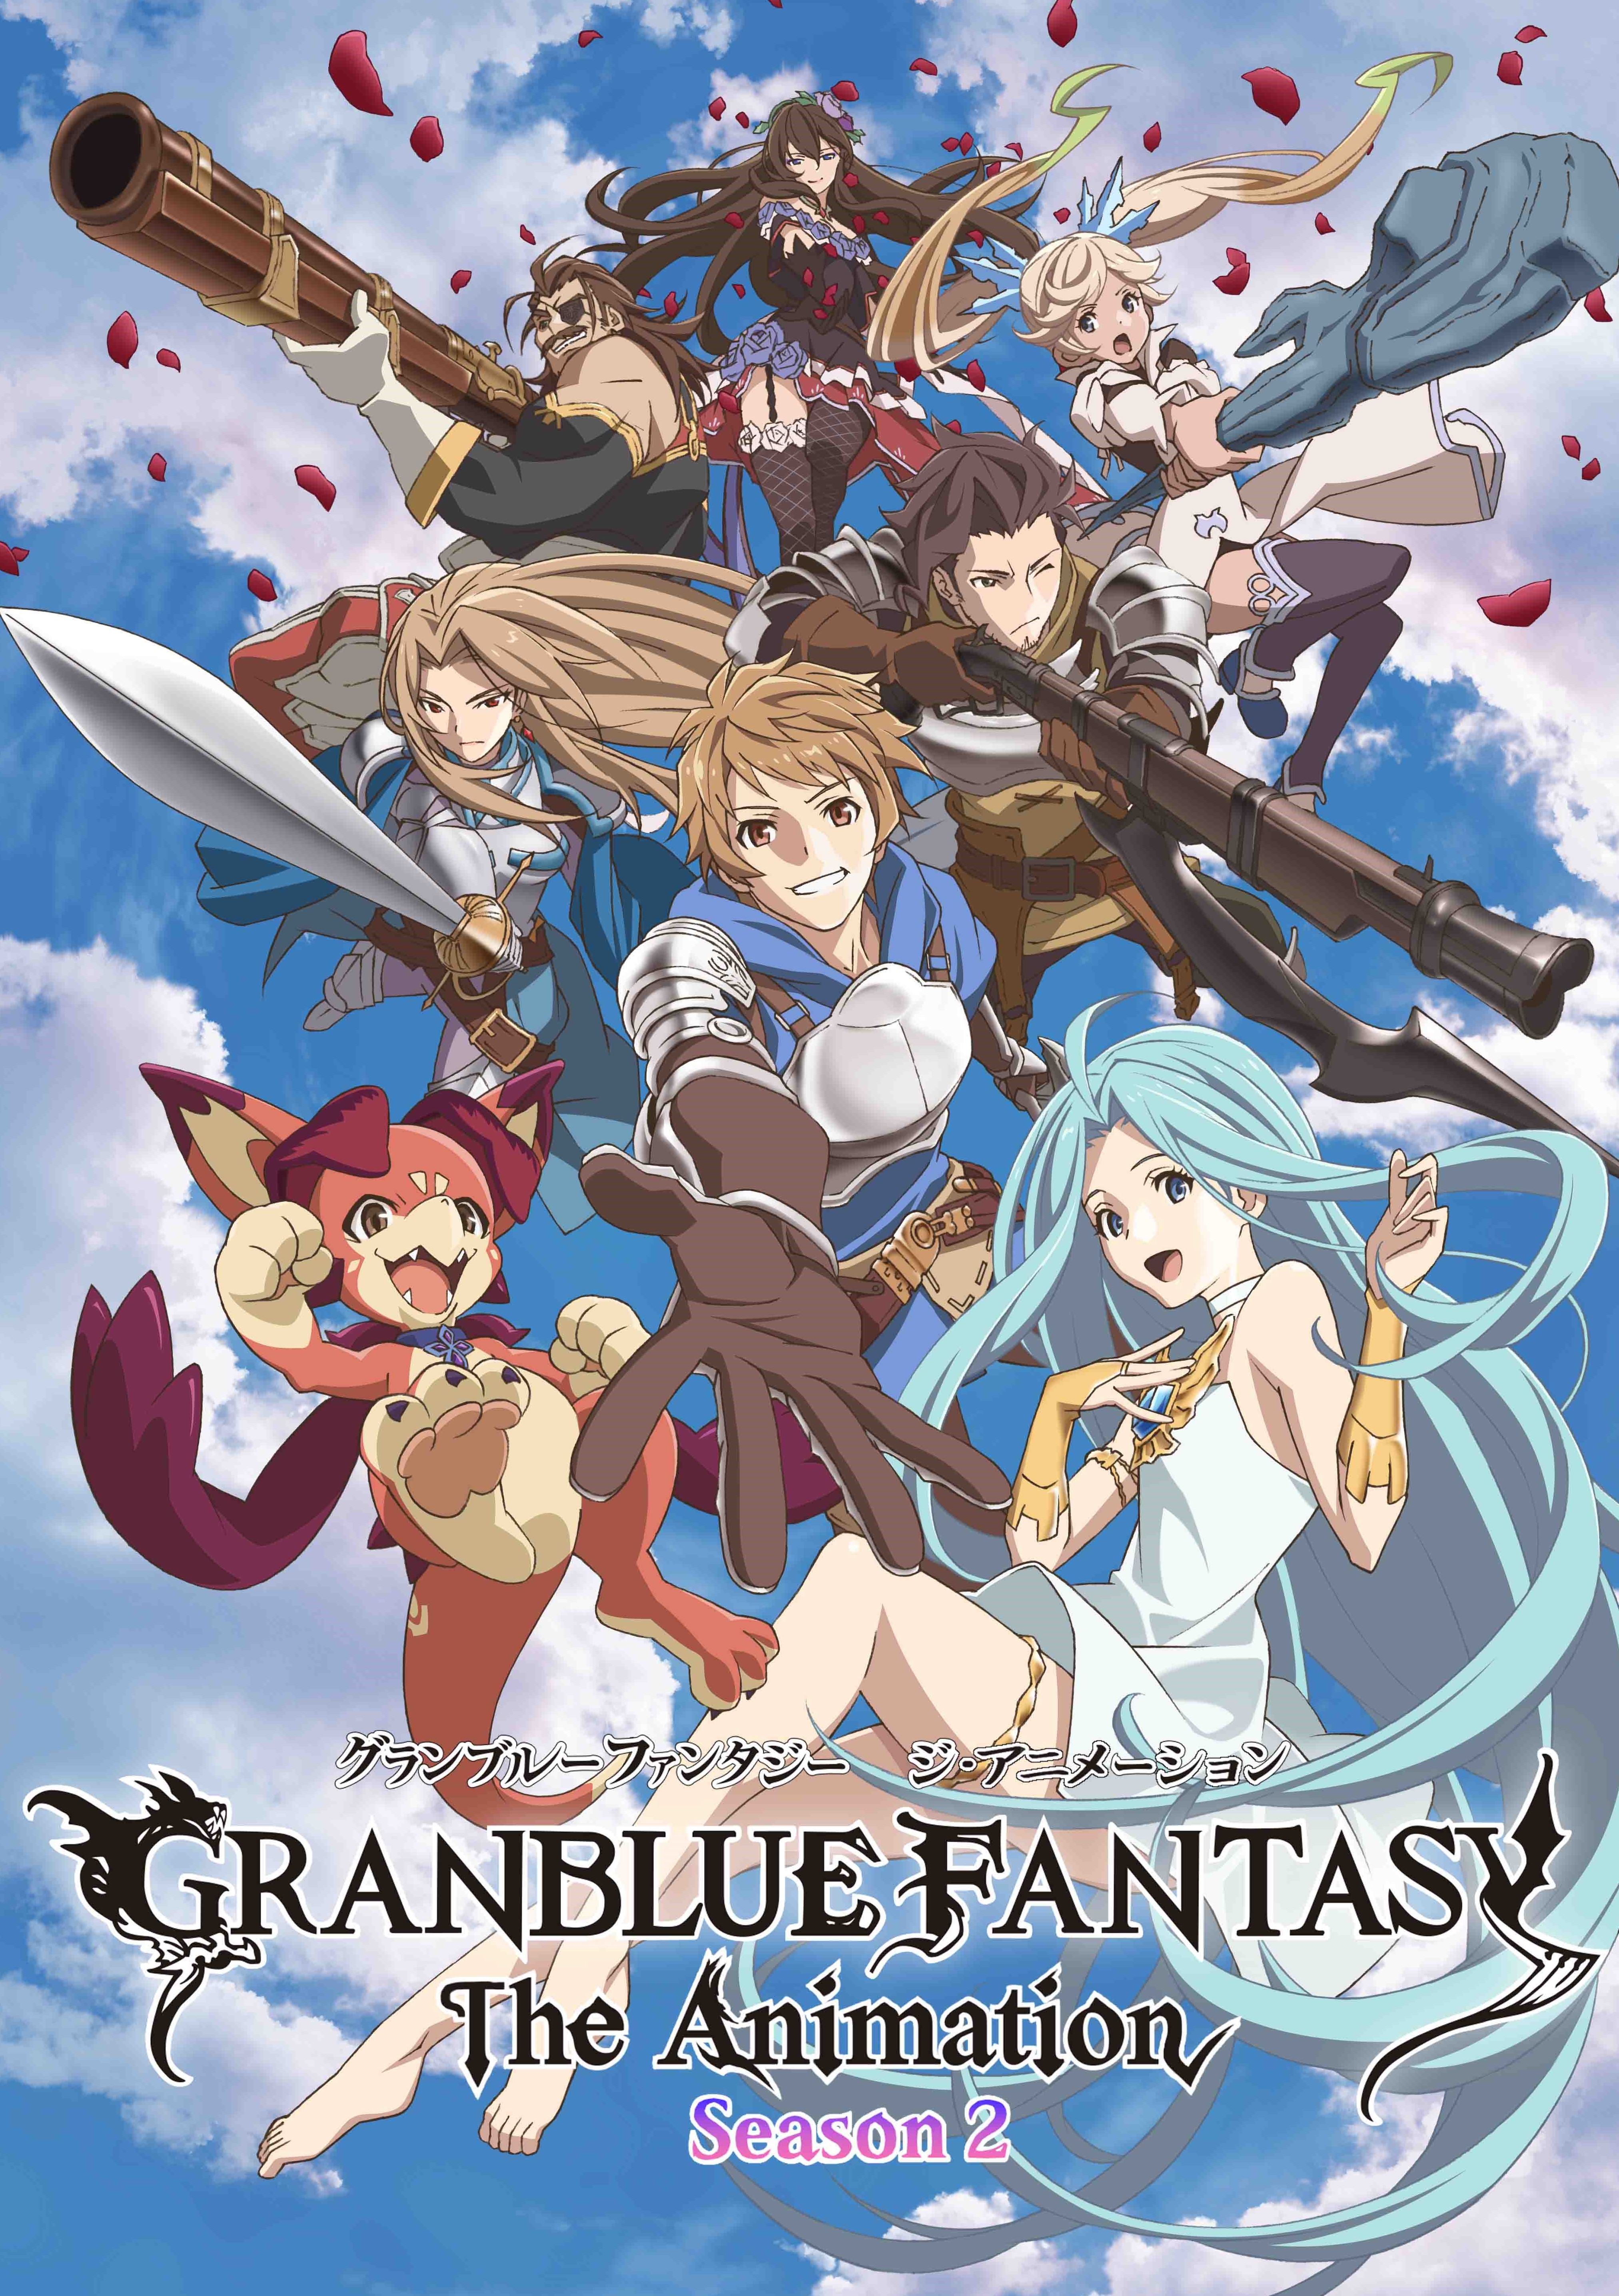 Granblue Fantasy The Animation Season 2 第2弾kv公開 エンディングテーマはadieuの 蒼 に決定 株式会社アニプレックスのプレスリリース